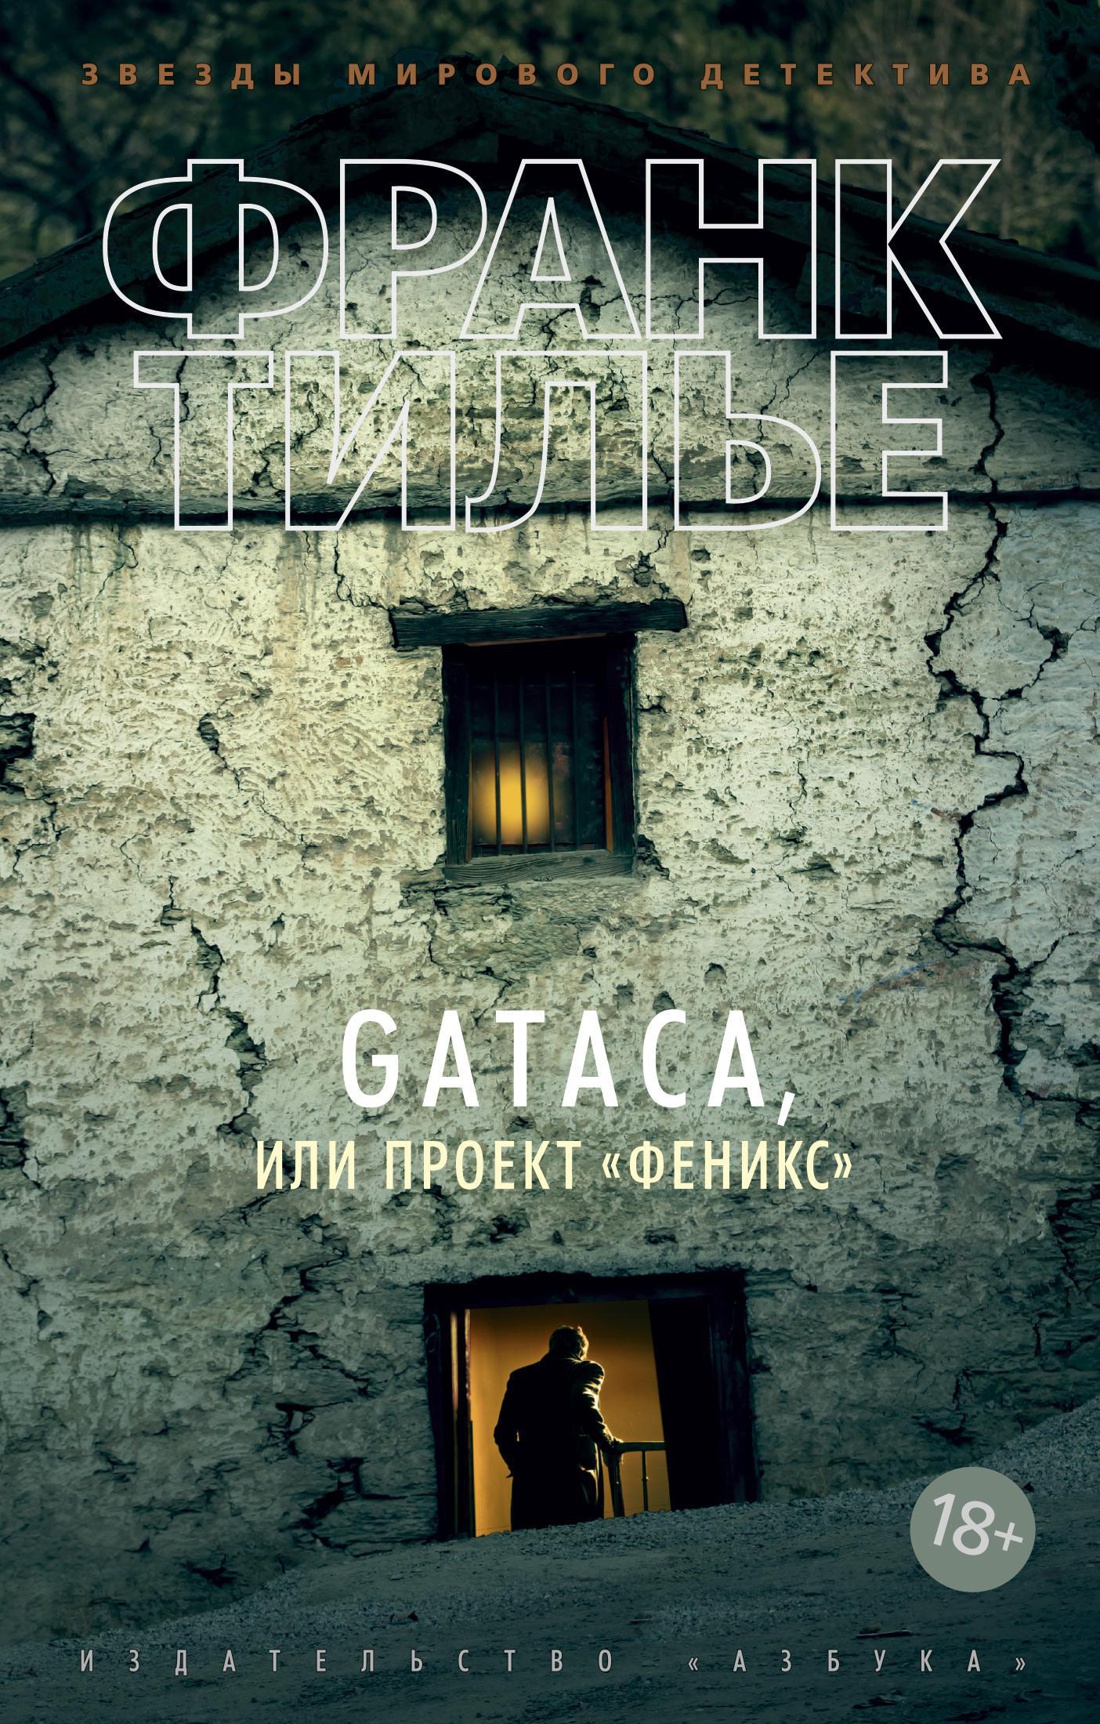 GATACA, или Проект "Феникс": Роман